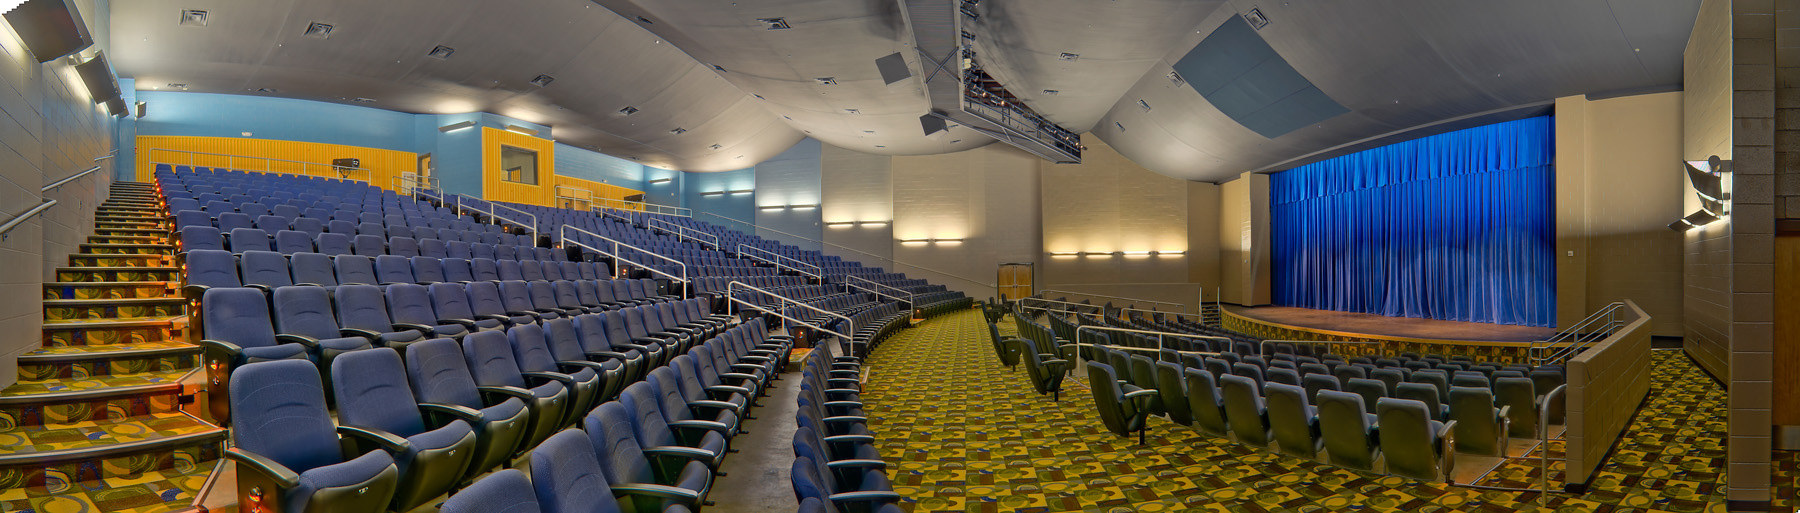 Panorama Auditorium